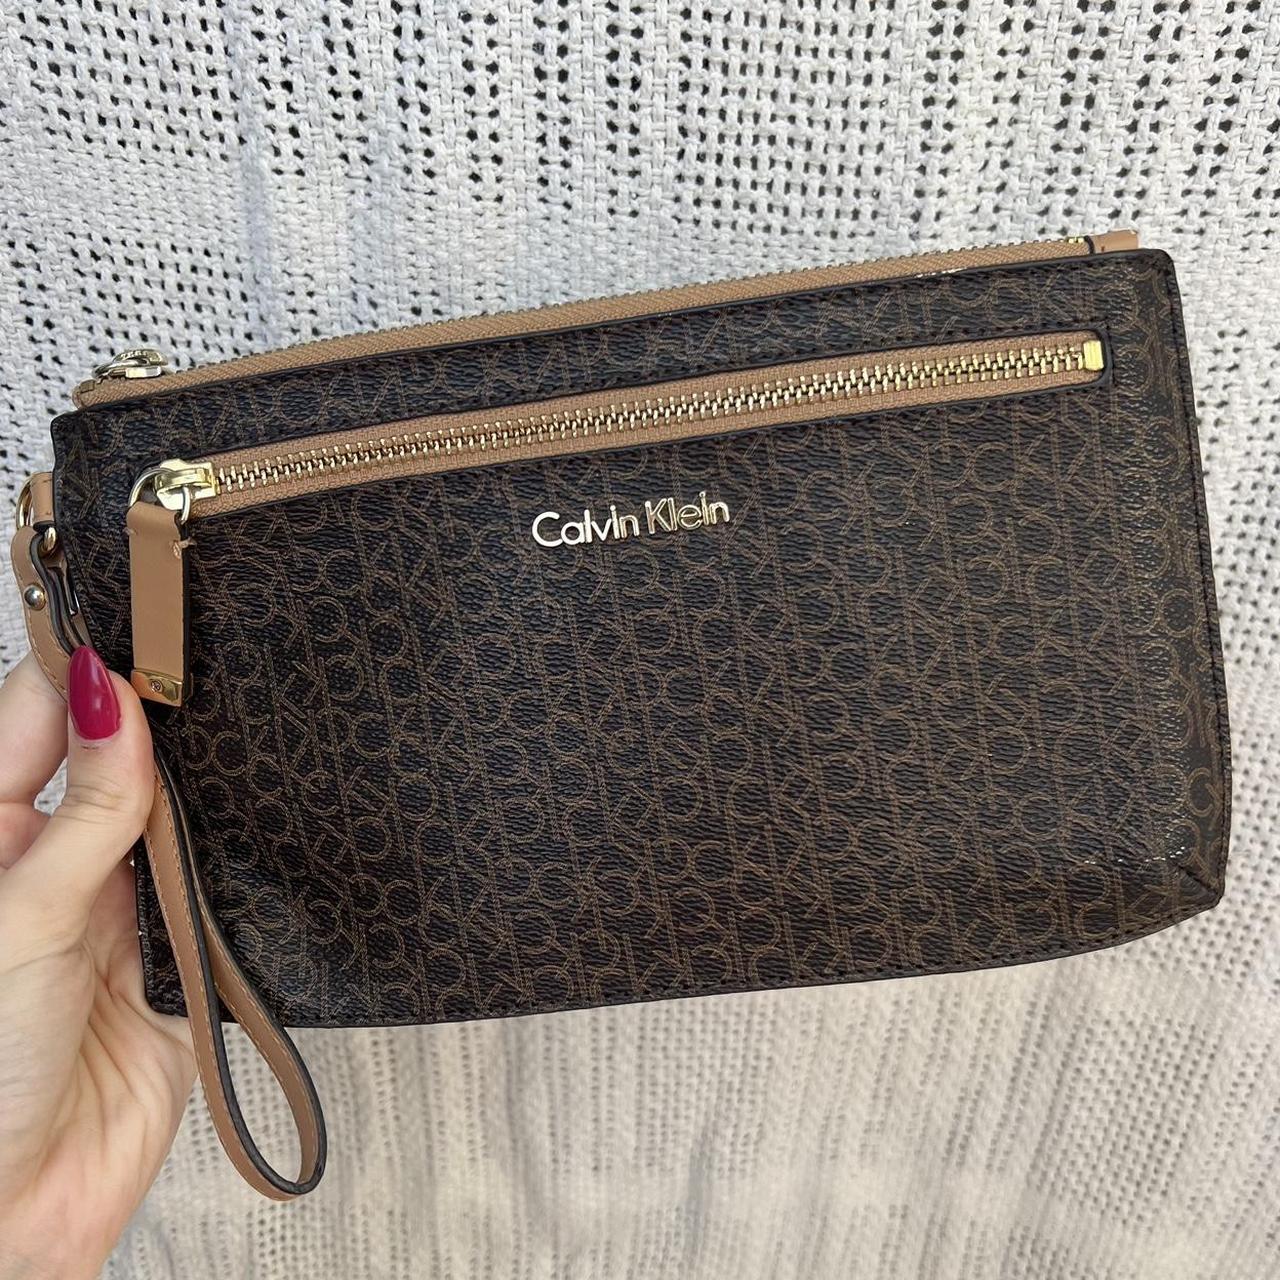 Calvin Klein Zip Around Saffiano Leather Wristlet Wallet Punch Pink :  Amazon.in: Fashion